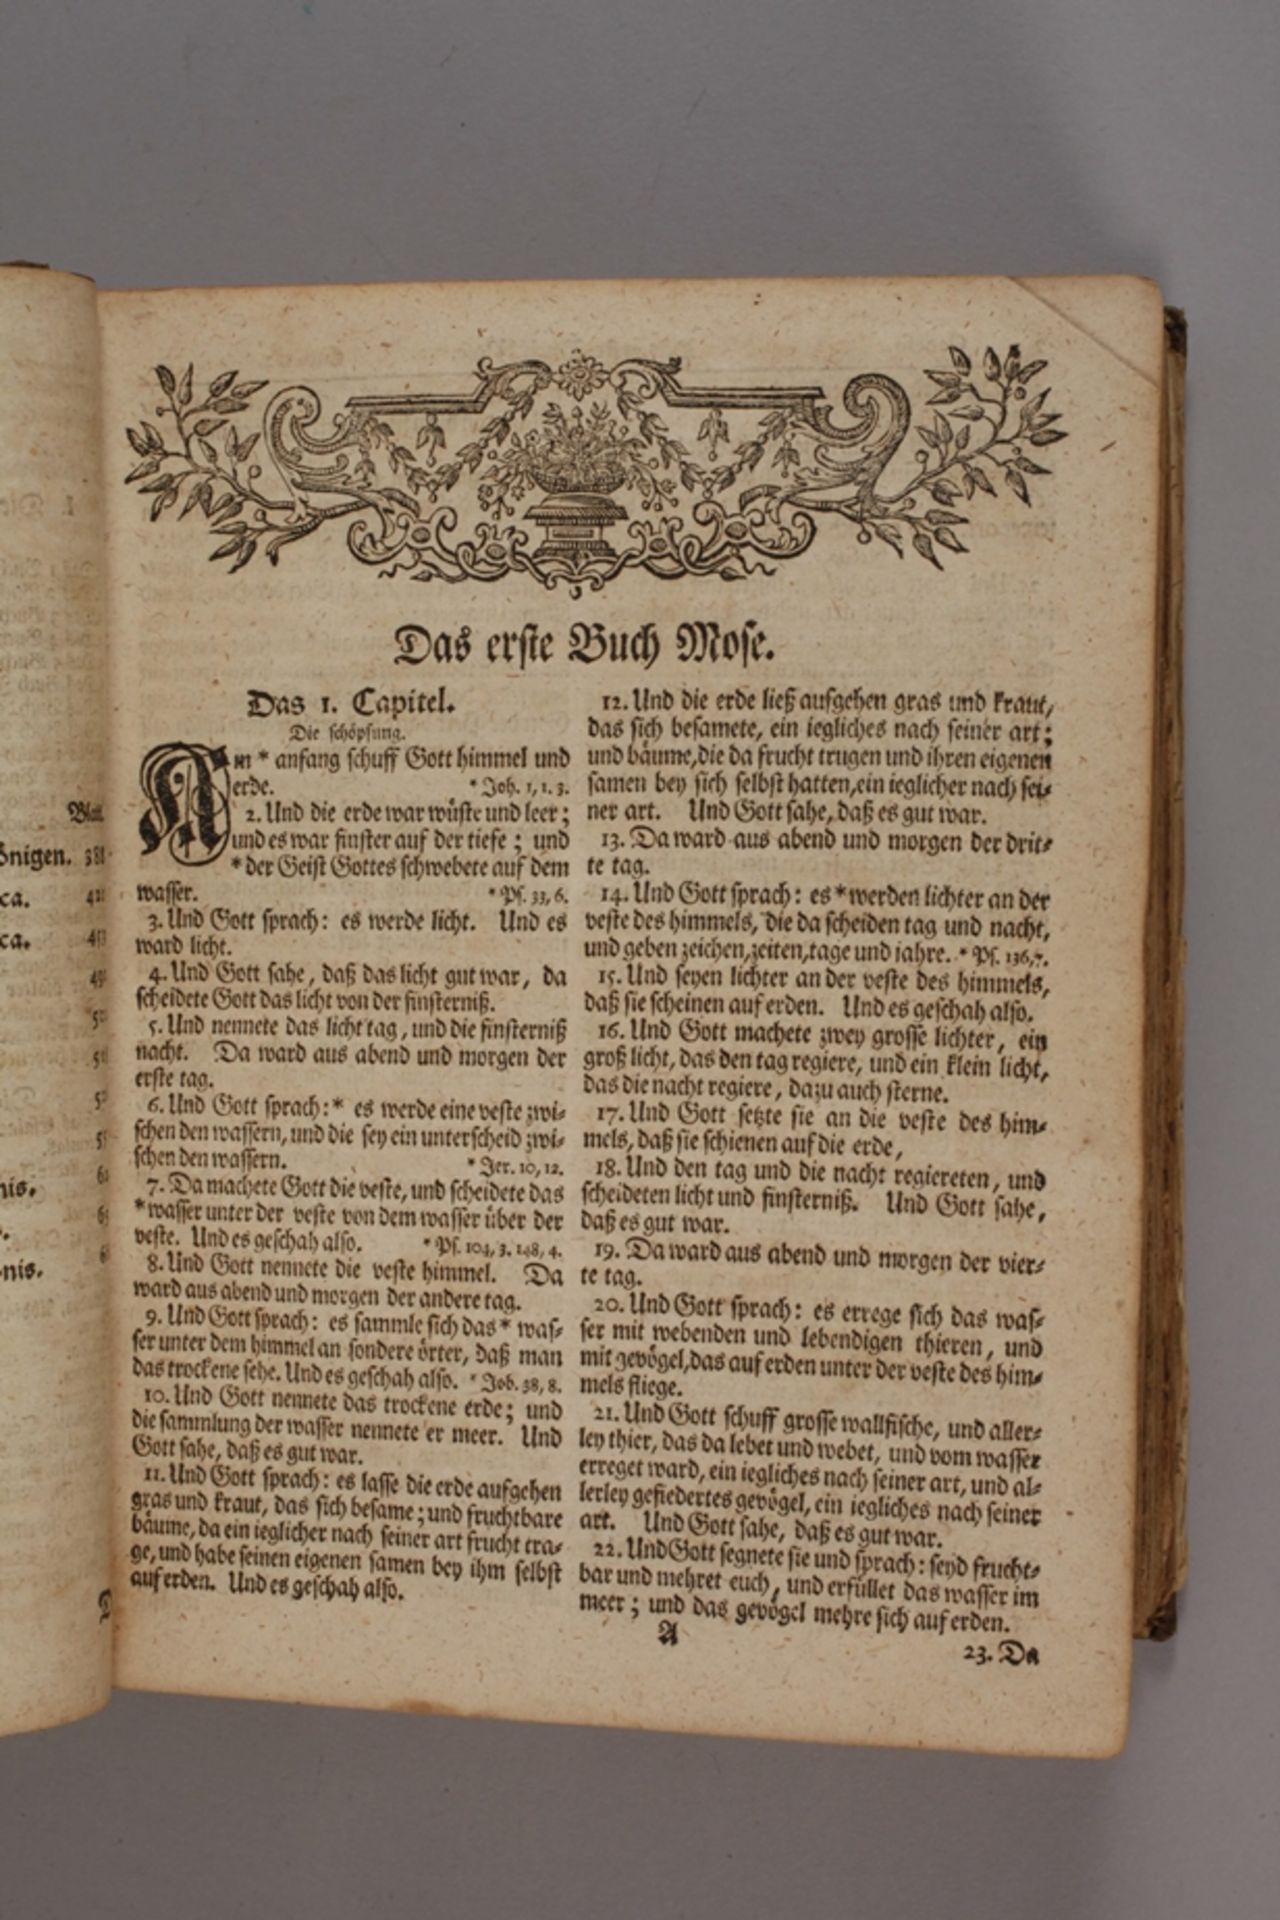 Bibel 1737 - Image 6 of 11